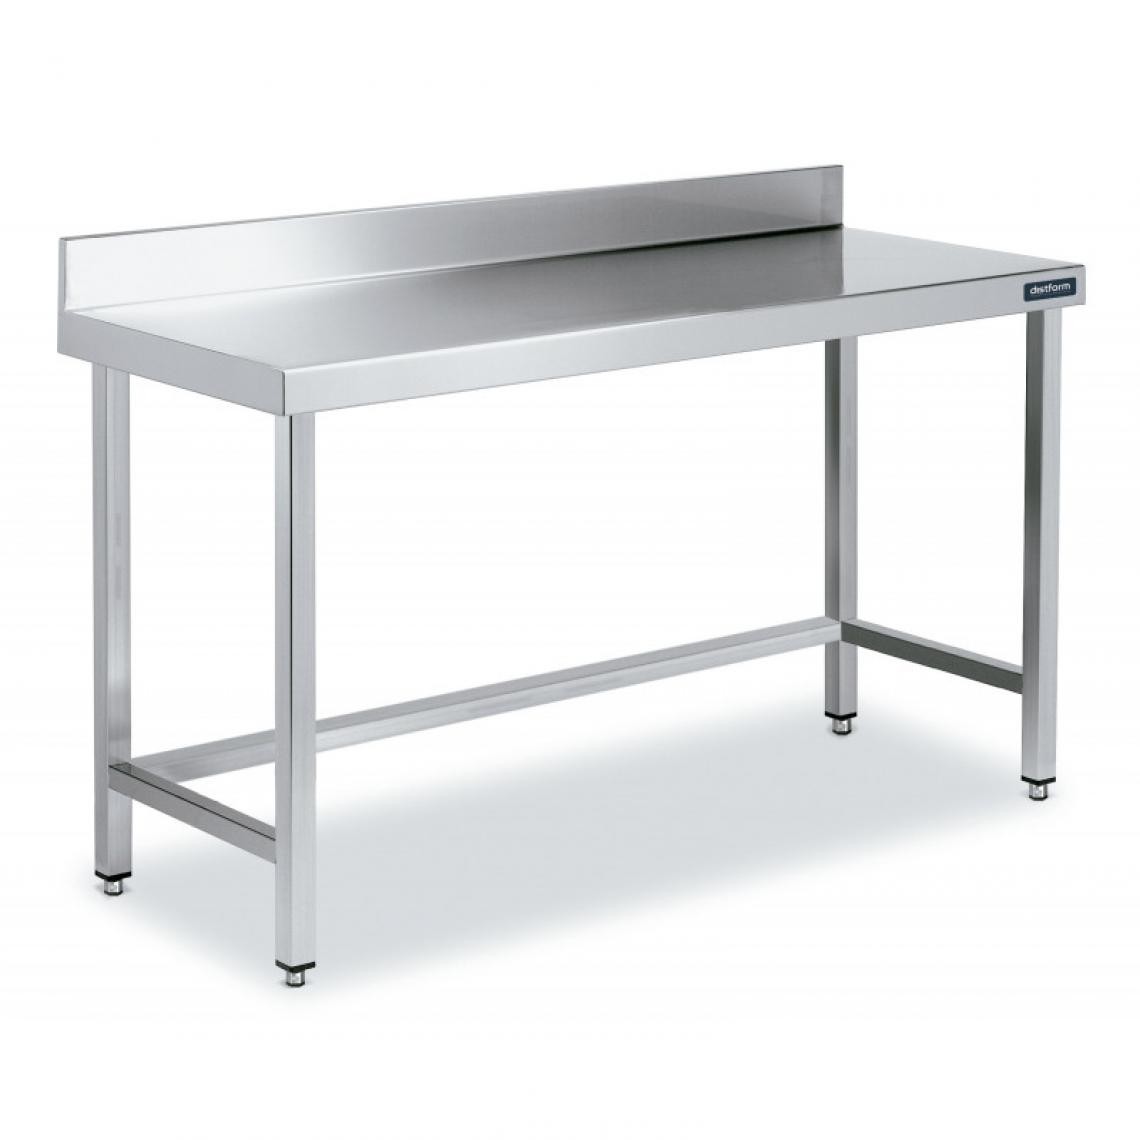 DISTFORM - Table Adossée en Inox avec Renforts Profondeur 600 mm - Distform - Acier inoxydable1600x600 - Tables à manger